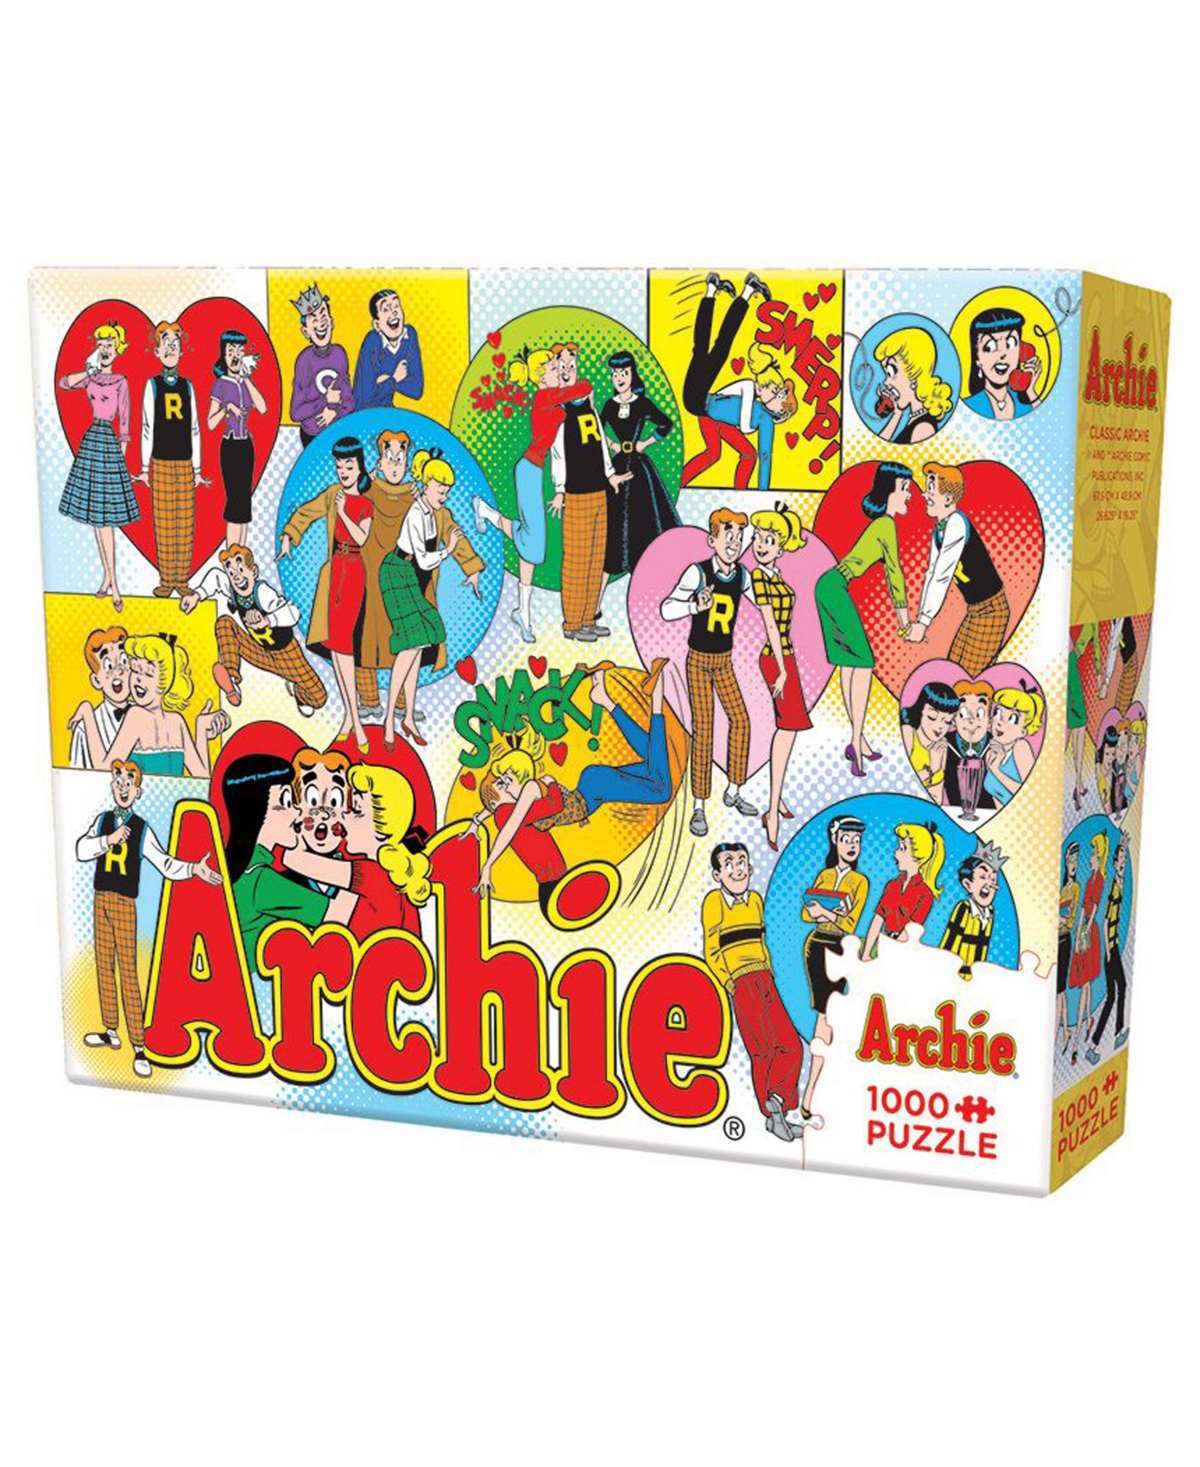 Cobble Hill Archie Comics In Multi